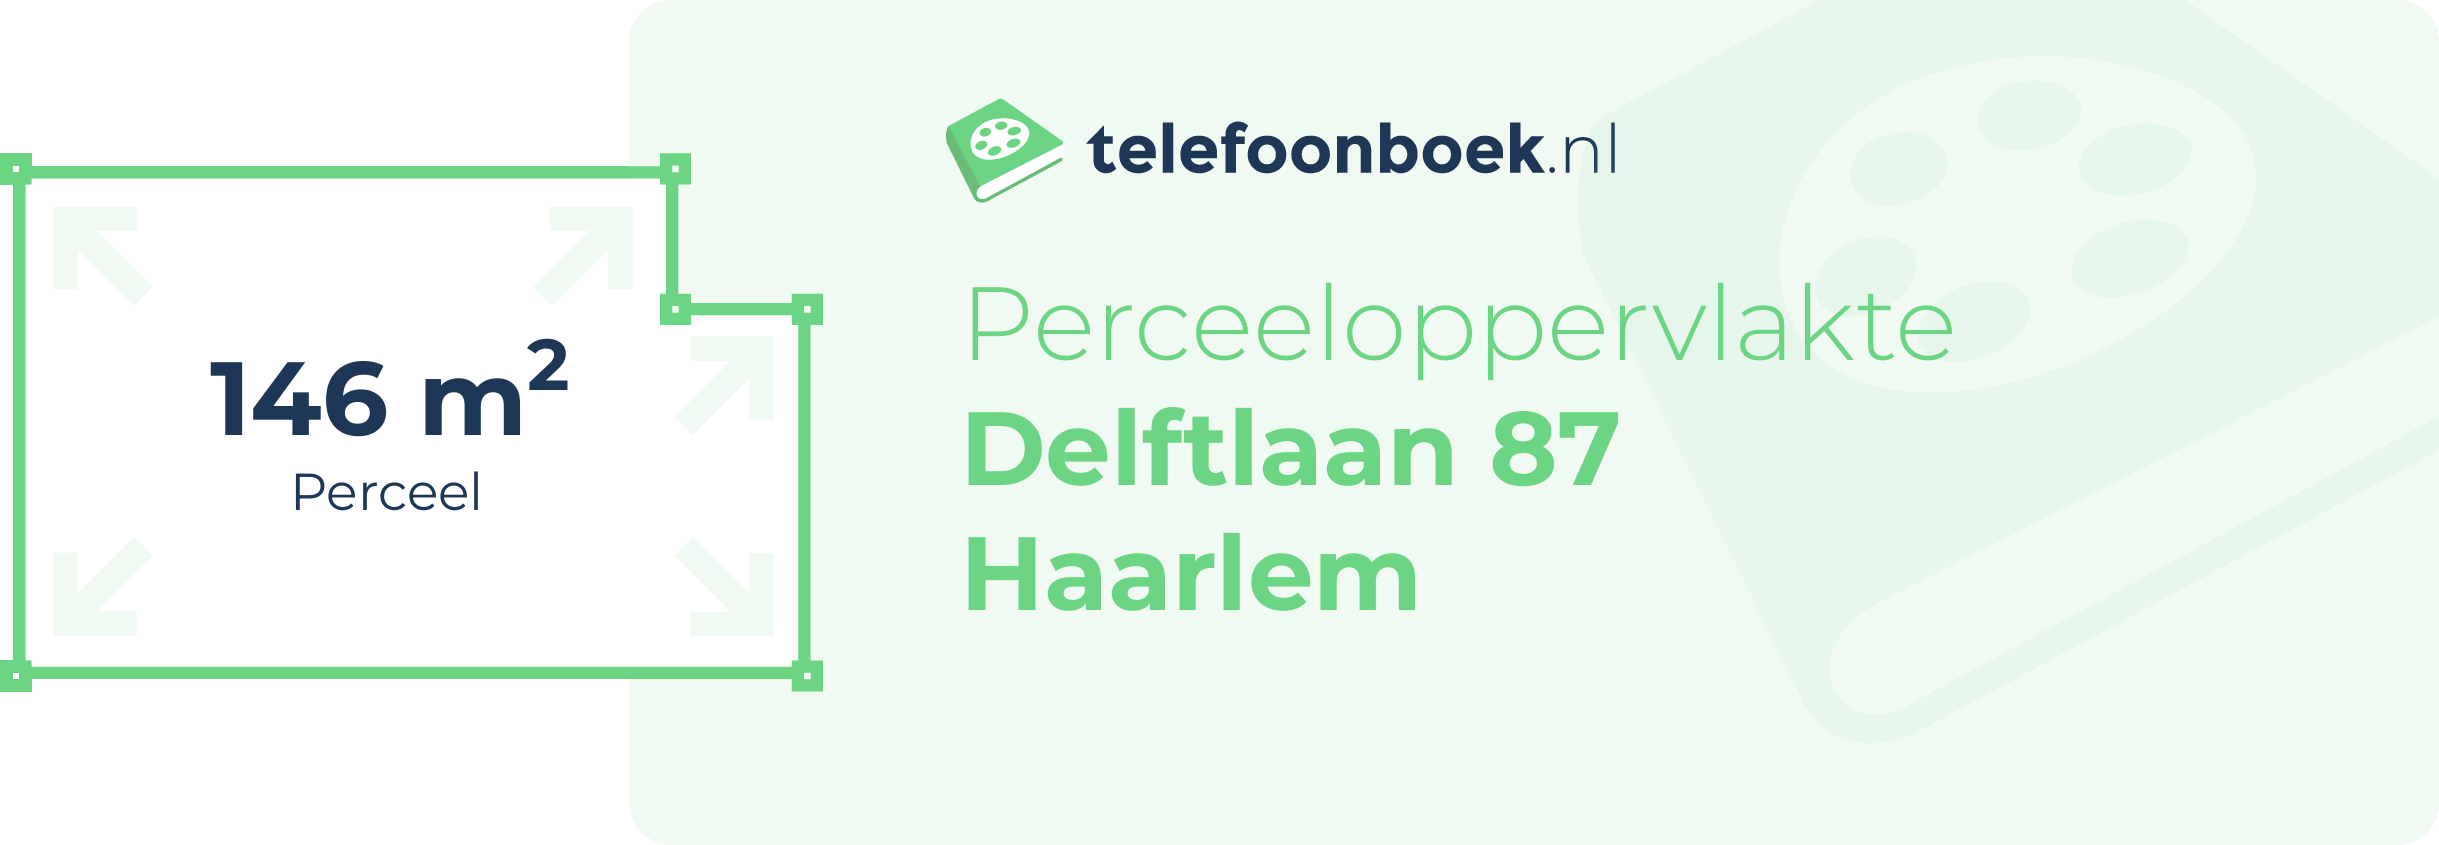 Perceeloppervlakte Delftlaan 87 Haarlem